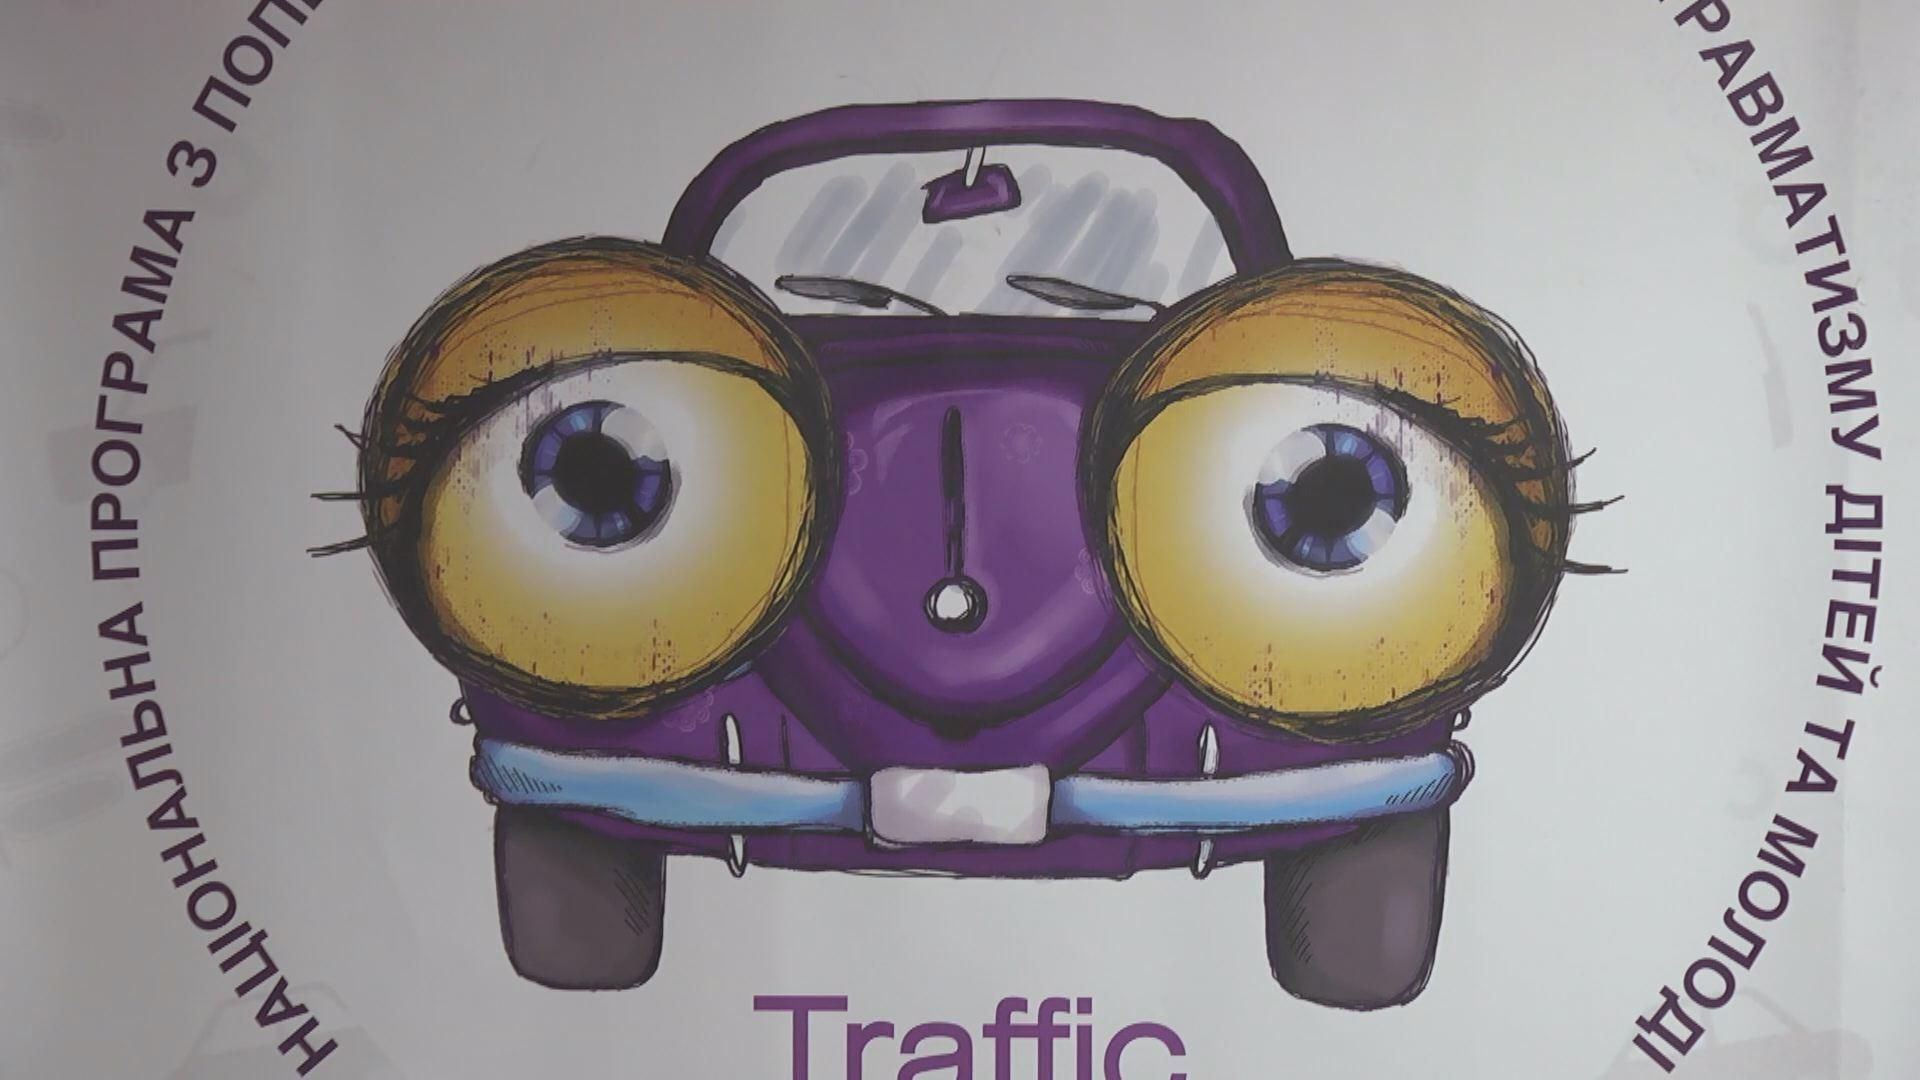 Компания WOG поддержала издание правил дорожного движения для детей